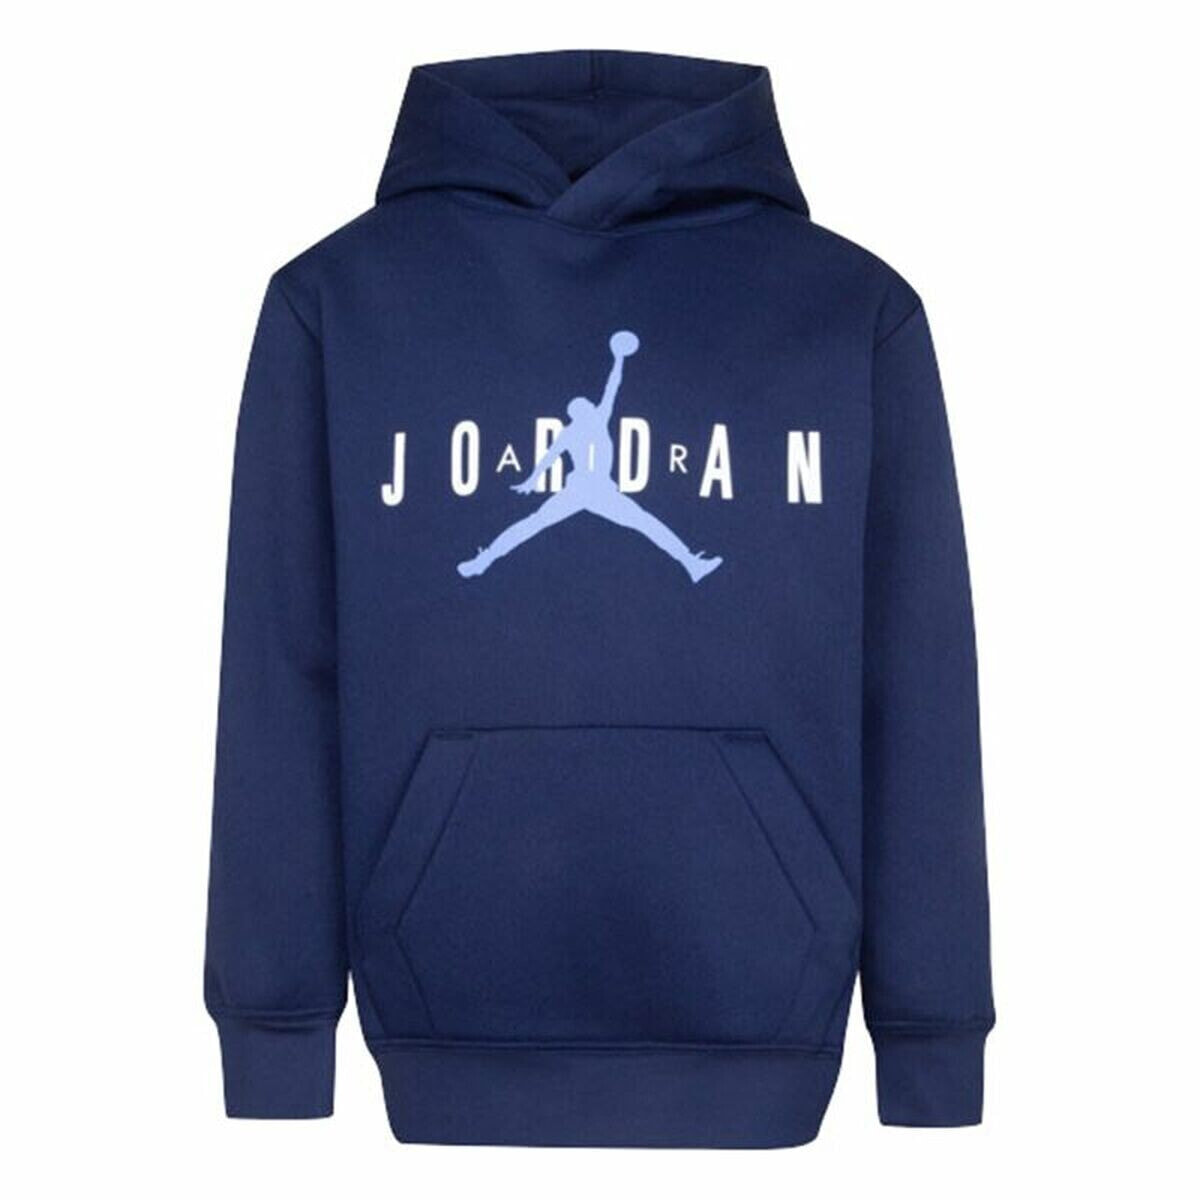 Children’s Hoodie Nike Jordan Jumpman Blue